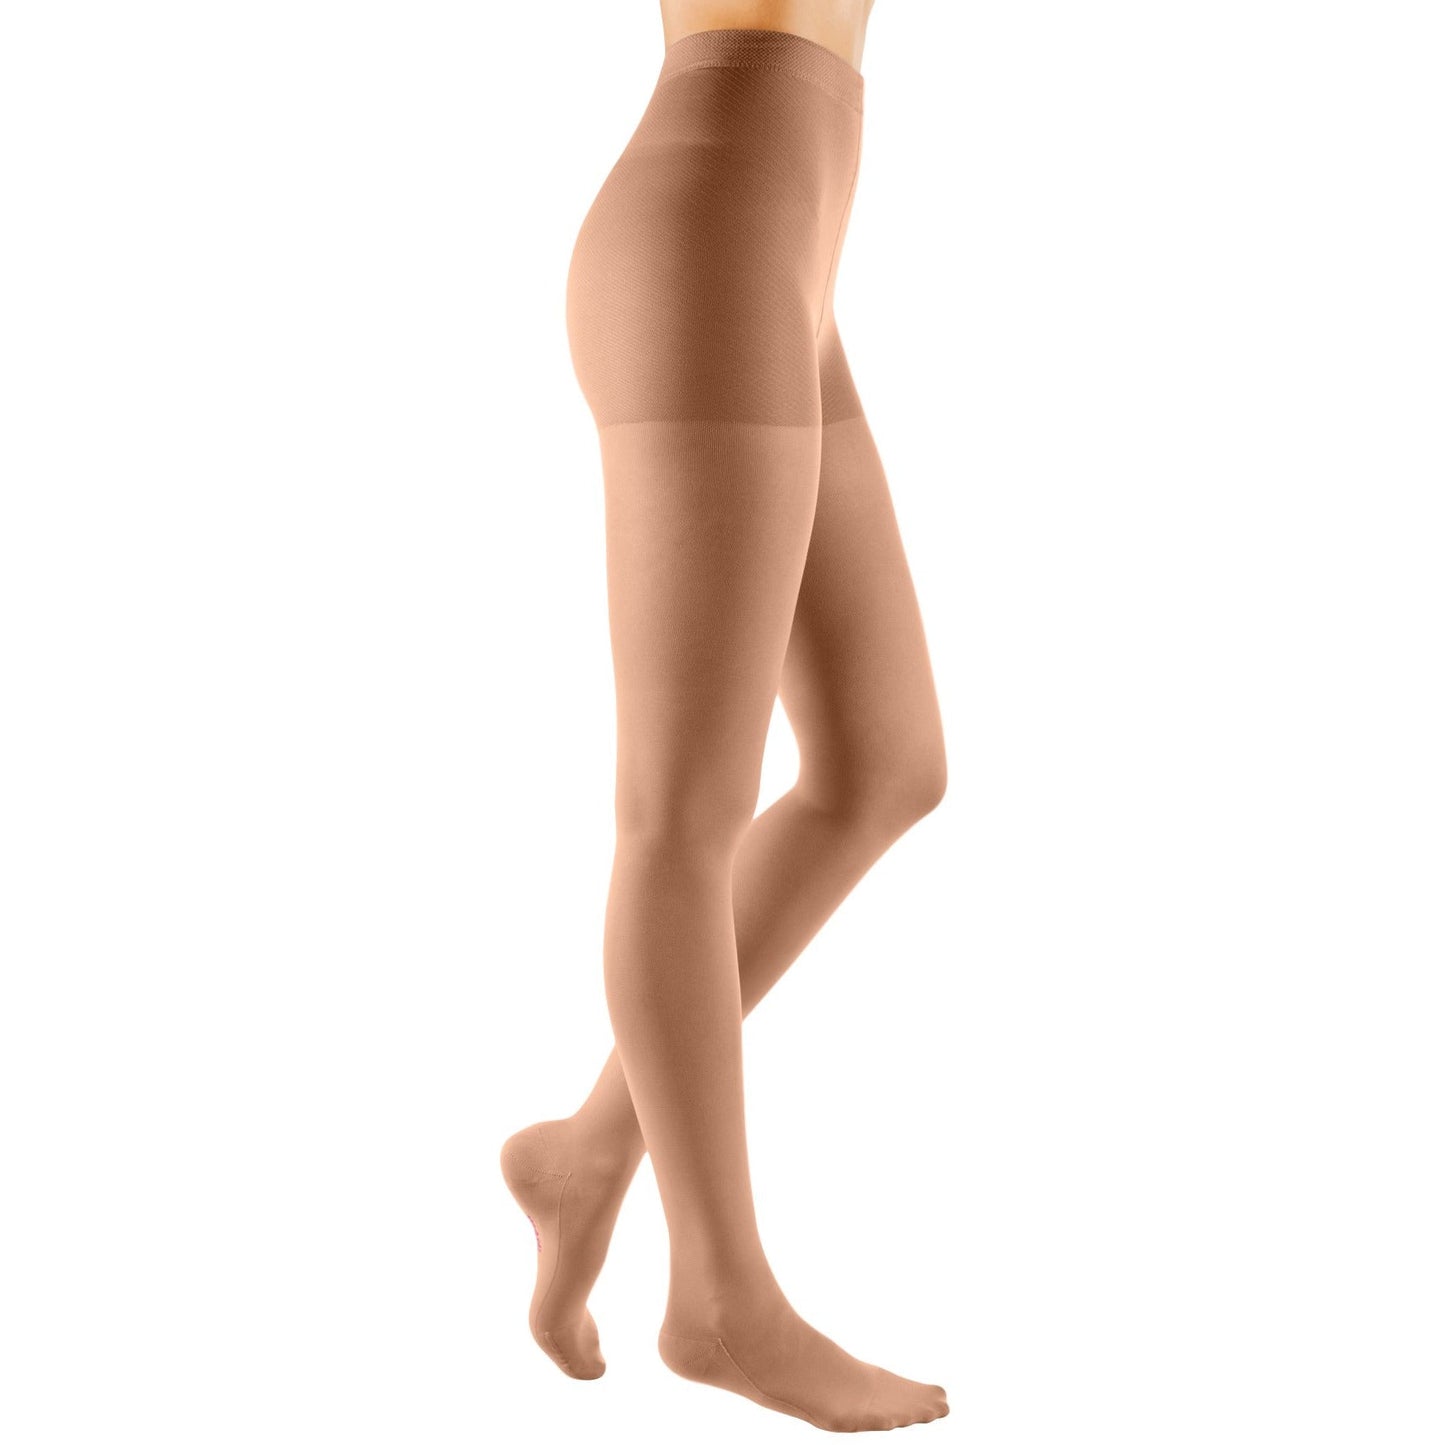 Mediven Comfort Pantyhose 20-30 mmHg [OVERSTOCK]